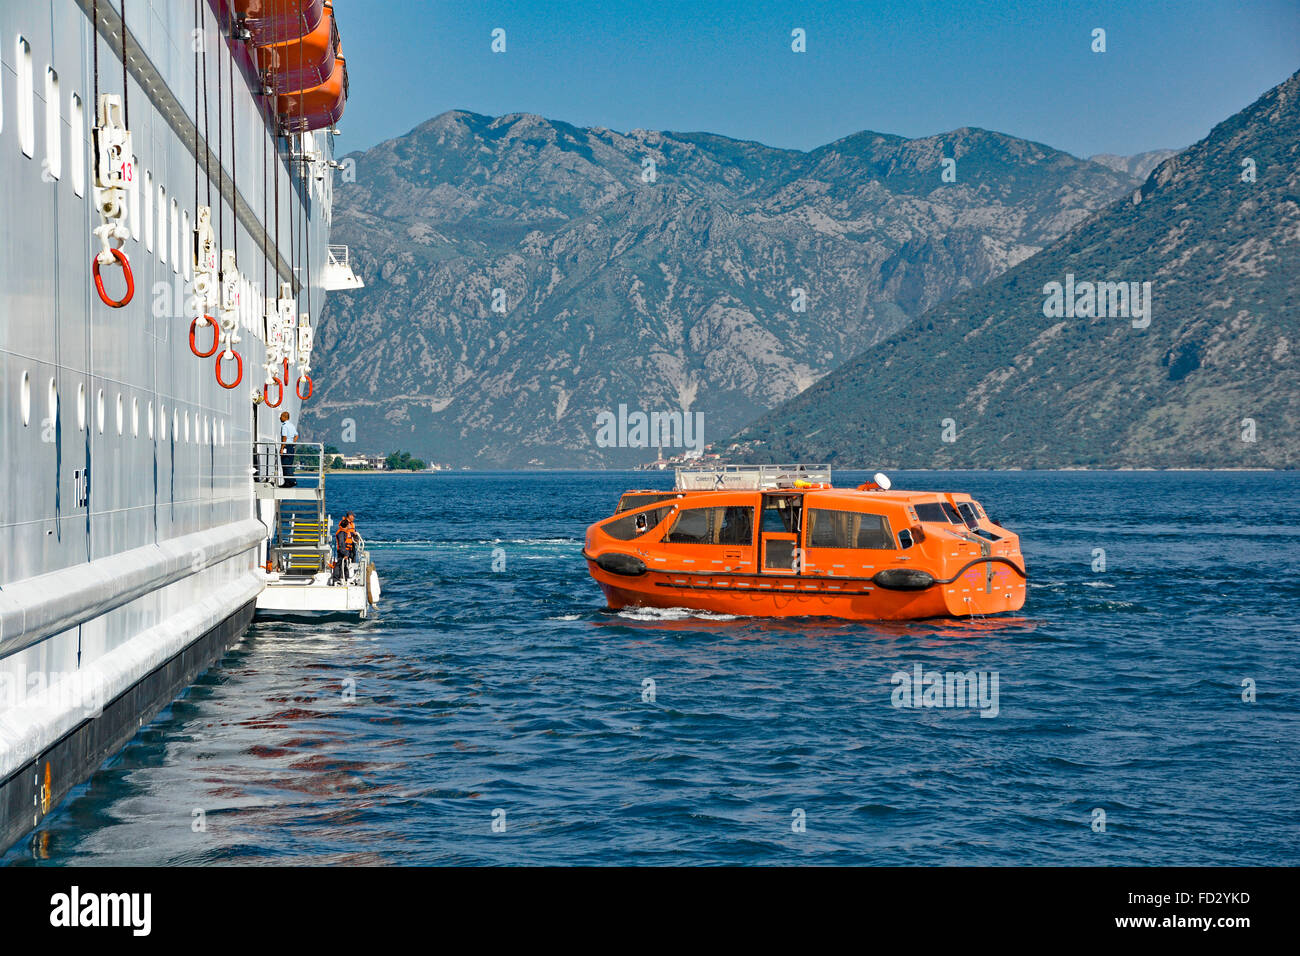 Bateau de croisière Ocean liner Bay of Kotor navires équipage sur plate-forme attendent les passagers pour un voyage à Kotor Town port Jetty via les navires de sauvetage Tender Montenegro UE Banque D'Images